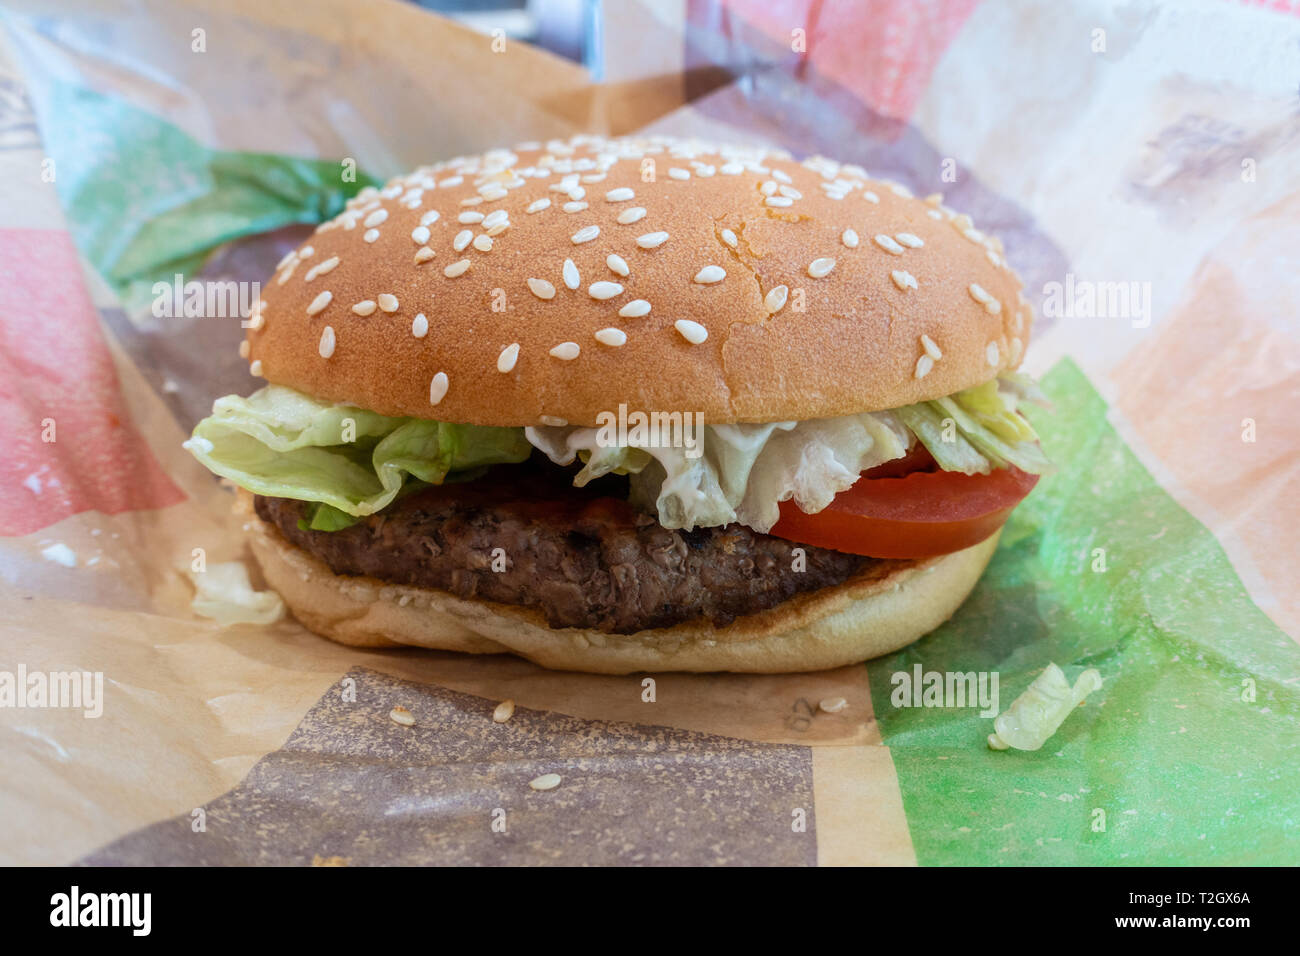 Una chiusura di un burger acquistato in un ristorante fast food. Foto Stock